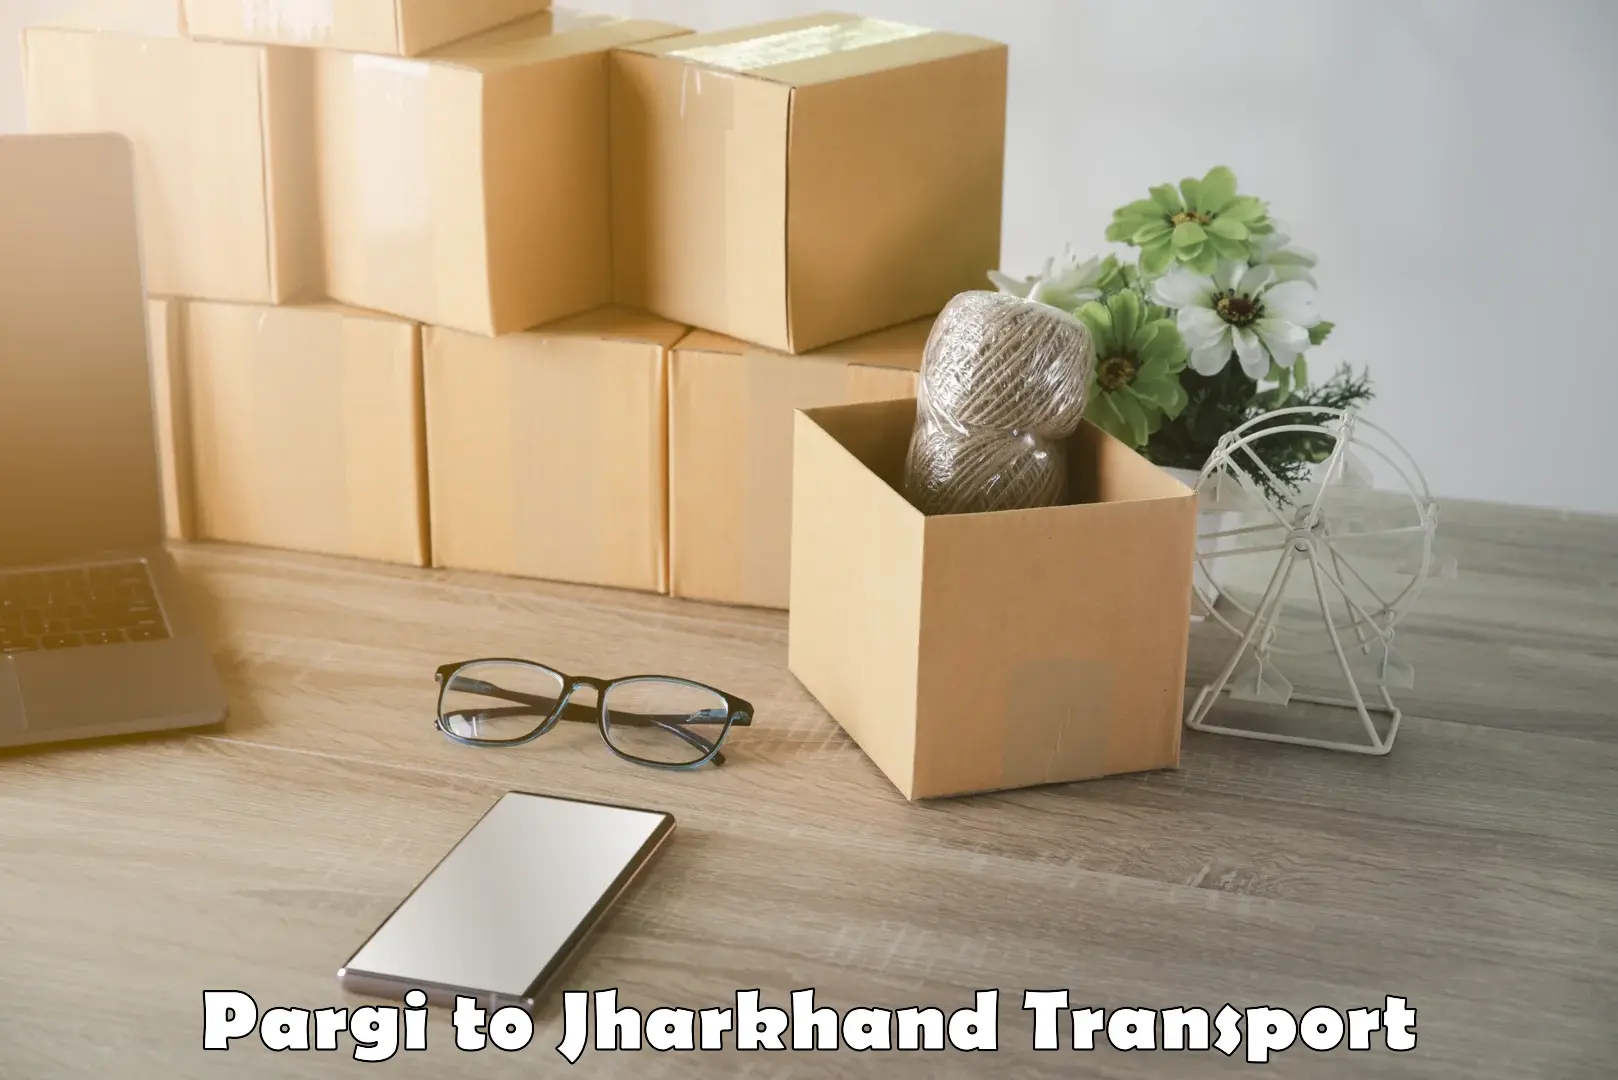 Container transport service Pargi to Latehar